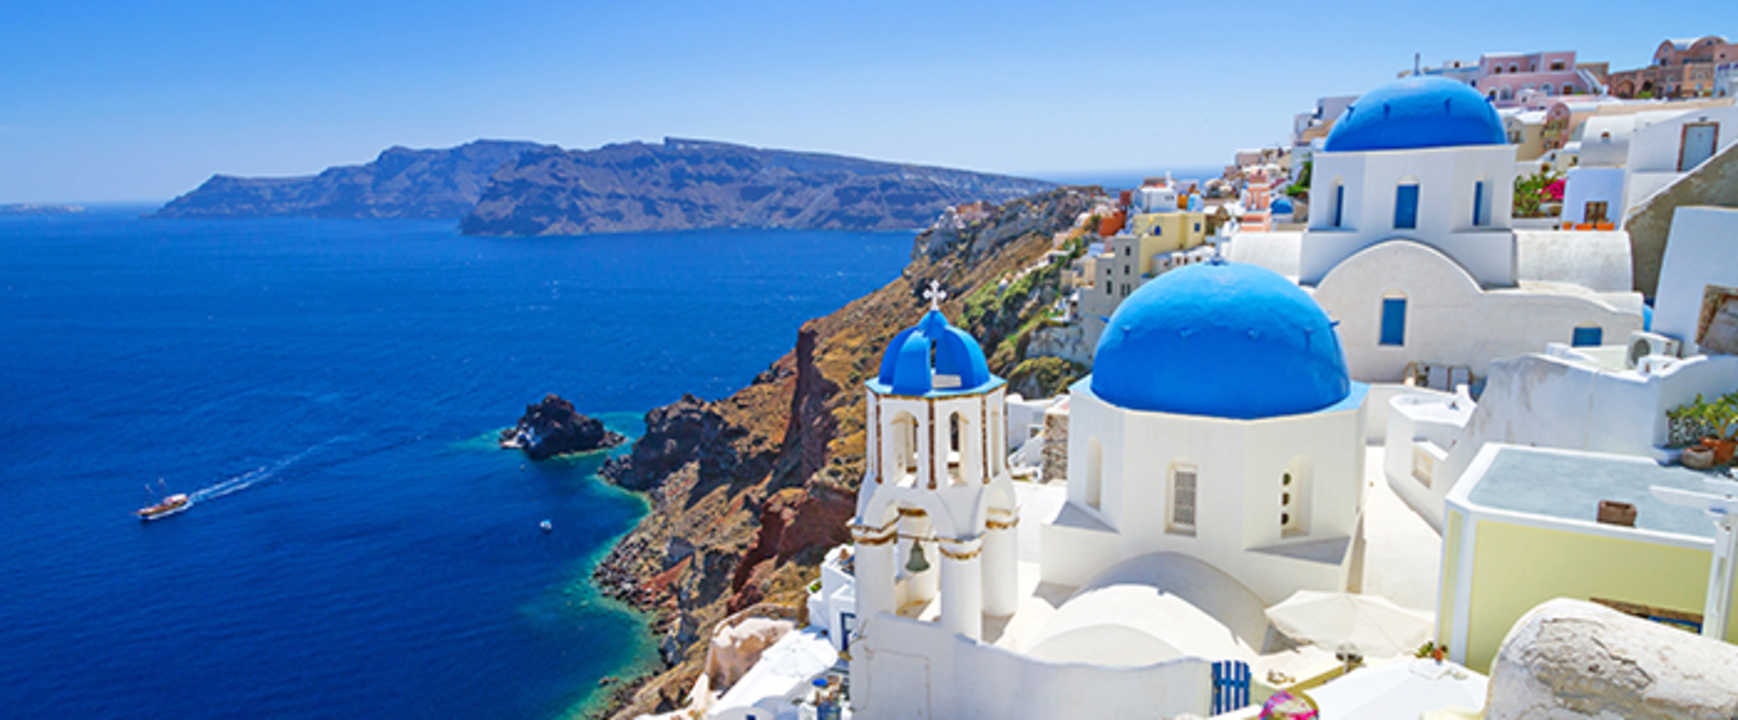 Ρωσικό ΜΜΕ: «Ελληνικό ταξιδιωτικό γραφείο ακύρωσε κρατήσεις τουριστών αξίας 12 εκατ. ευρώ»